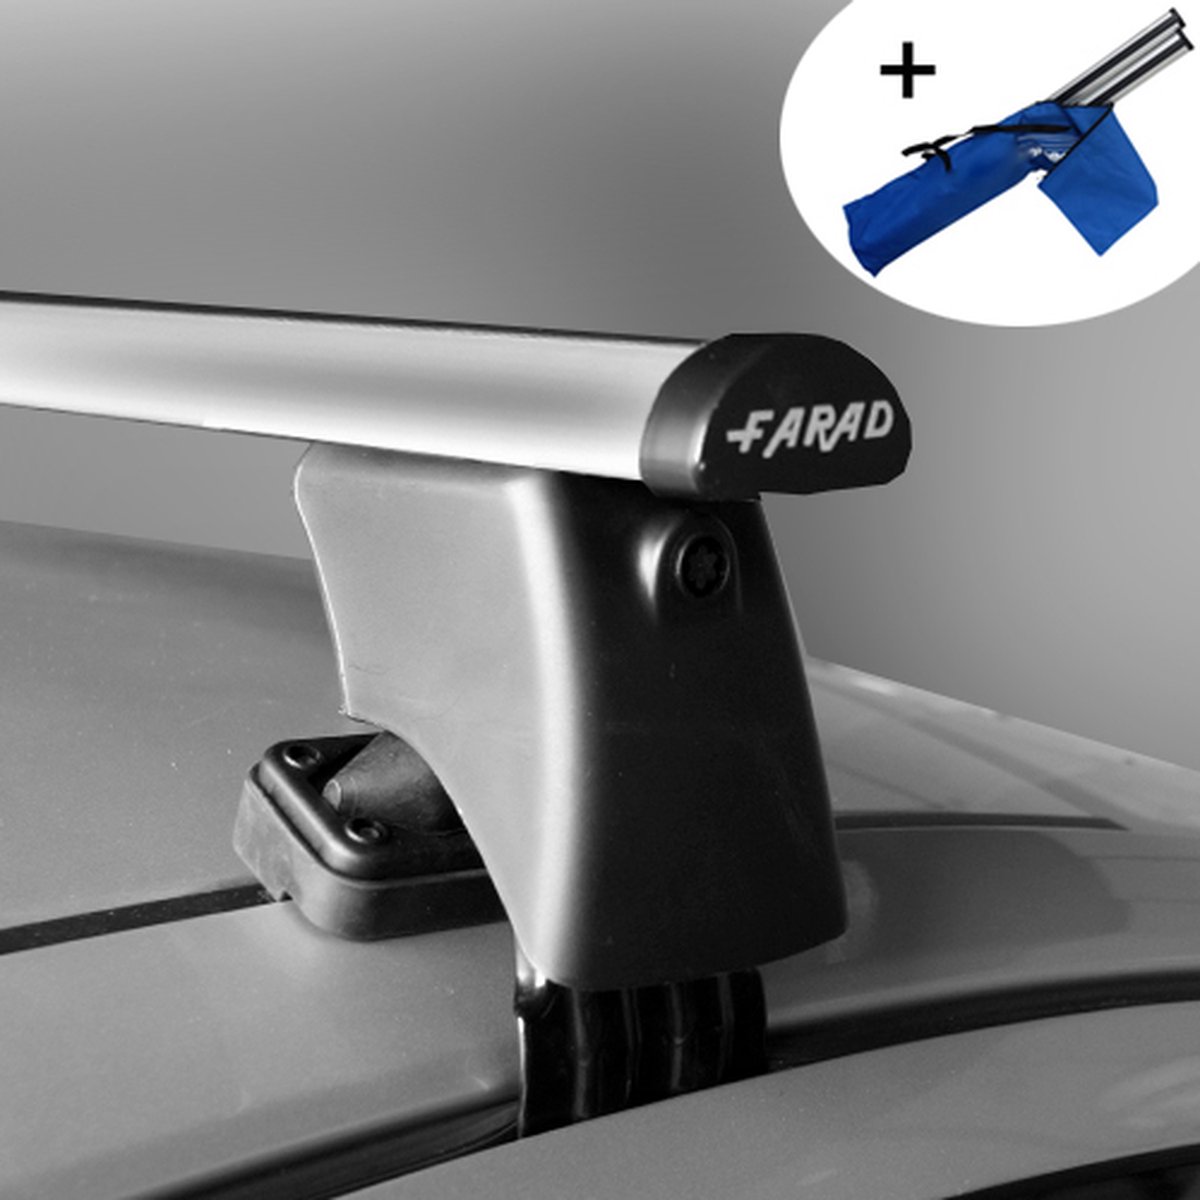 Dakdragers geschikt voor Fiat Bravo 5 deurs hatchback 2007 t/m 2014 - Aluminium - inclusief dakdrager opbergtas